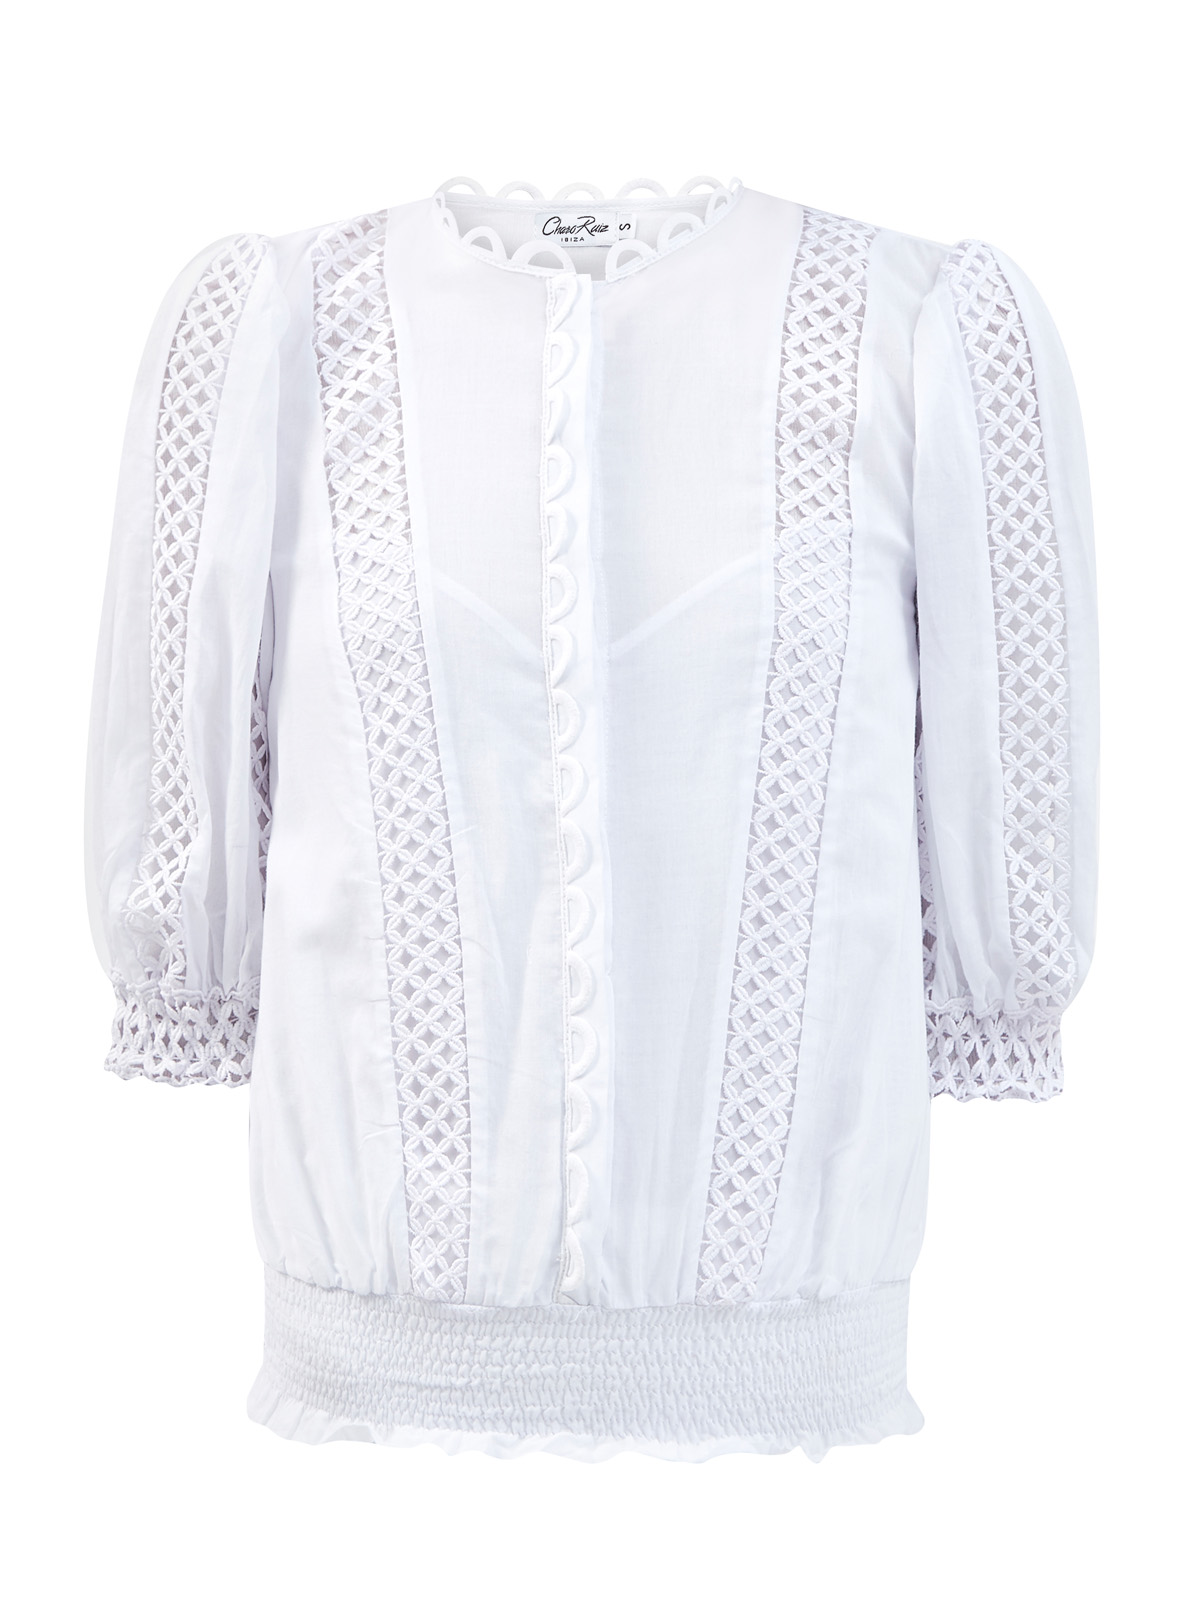 Легкая блуза Estela с ажурной вышивкой в тон CHARO RUIZ IBIZA, цвет белый, размер S;M;L;XL - фото 1